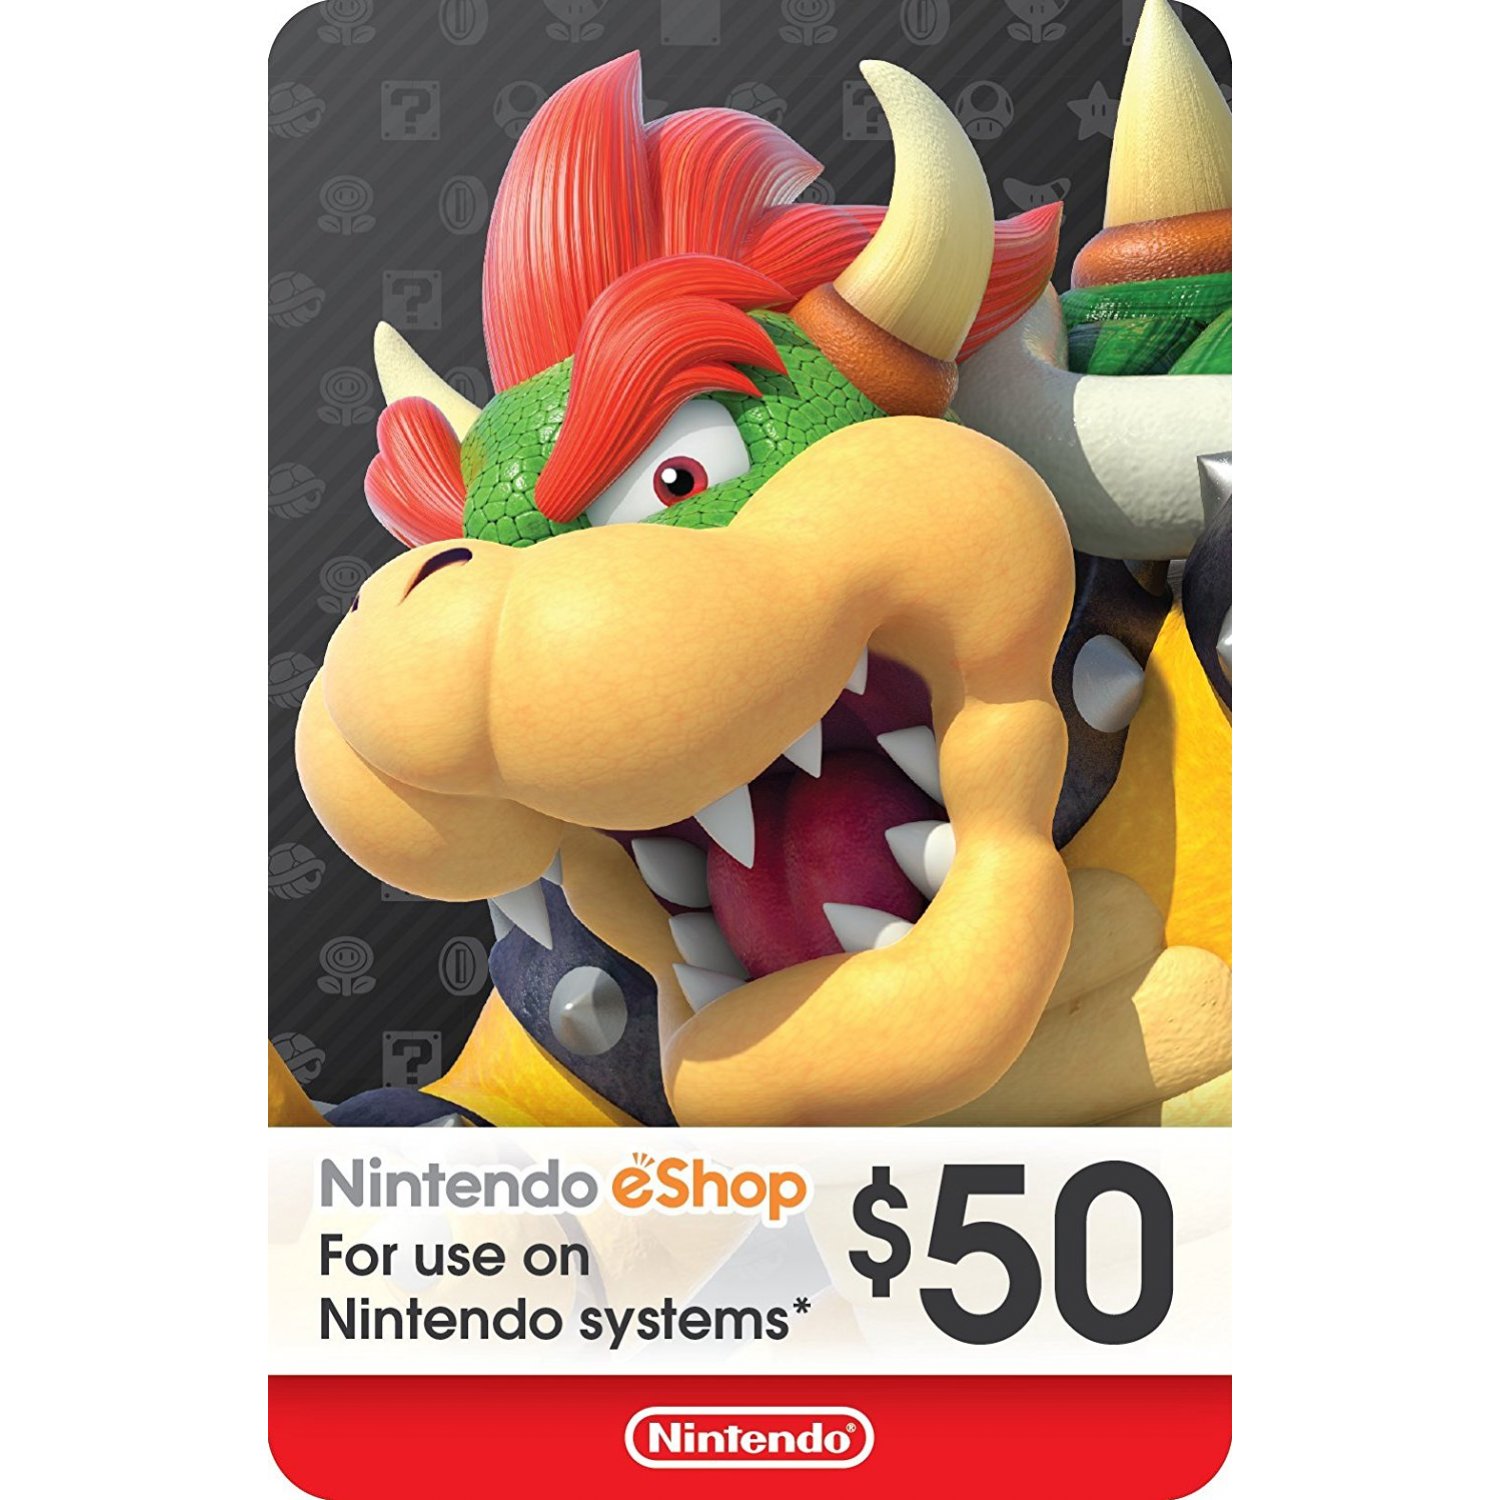 ايتونز 5 دولار أمريكي لا تنسَ أنك شاهدت هذا الإعلان في عنكبوت نوع البطاقة/ 5 دولار أمريكي -  بطاقات Nintendo Eshop لا...